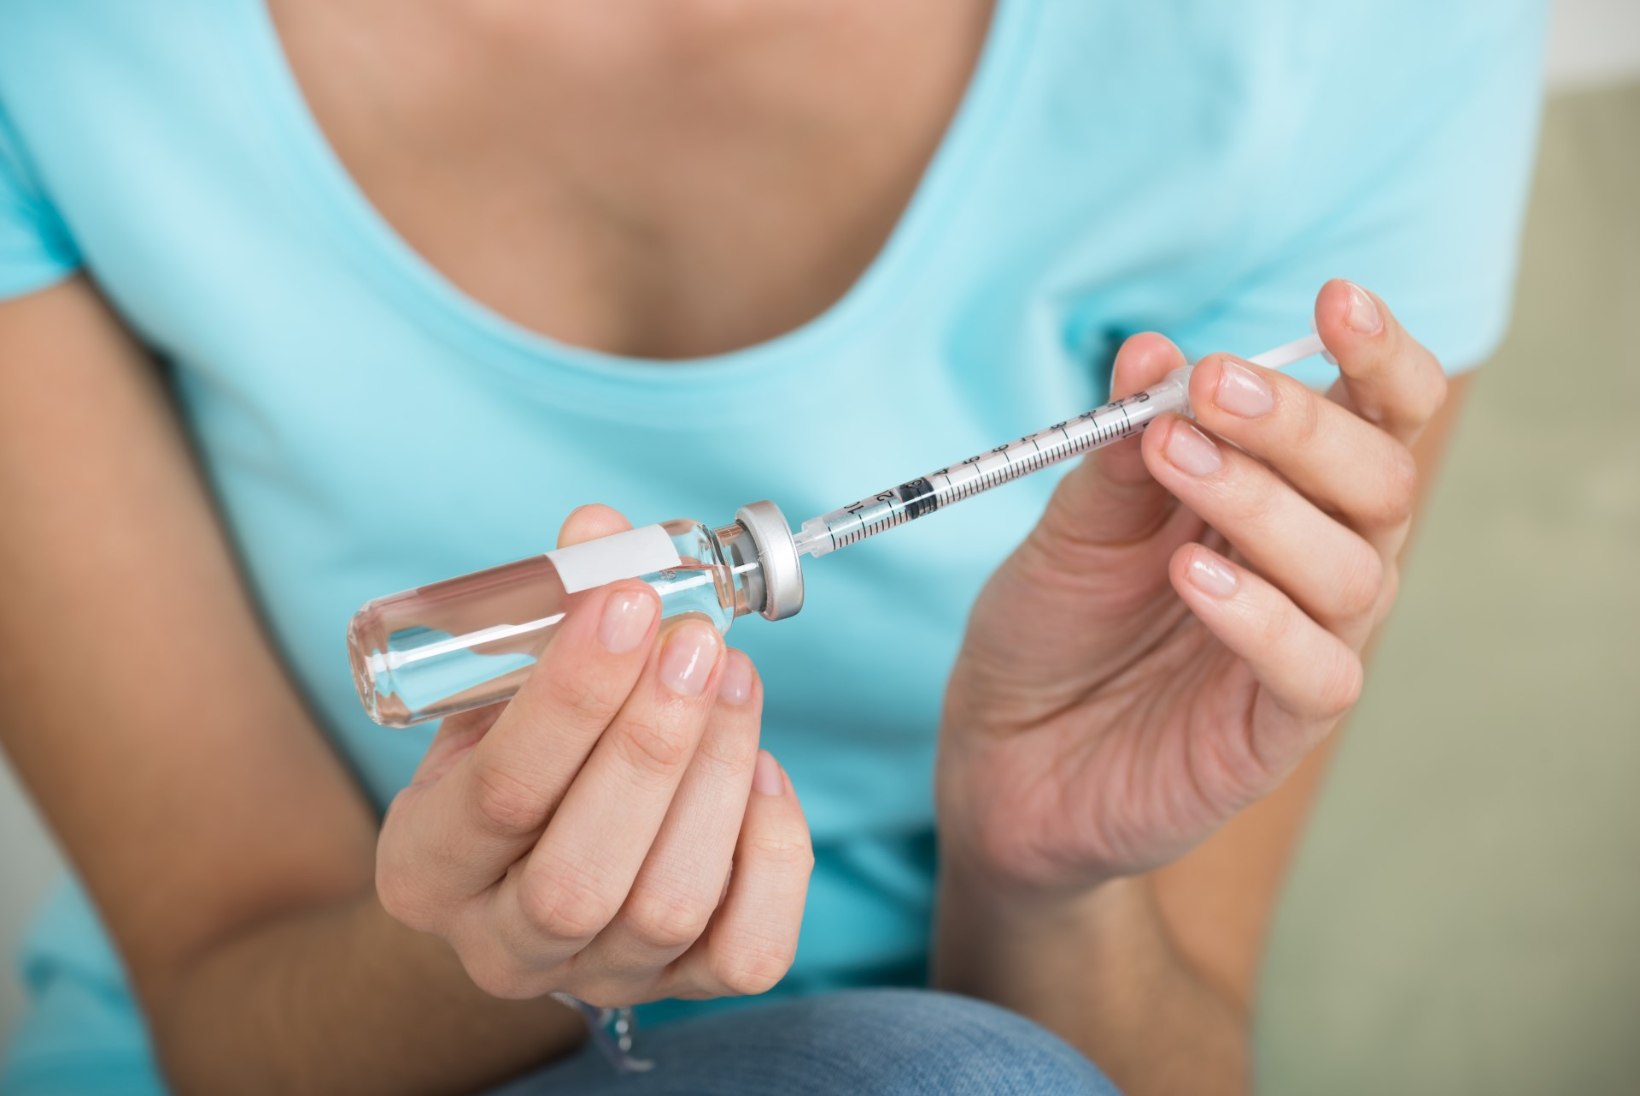 Üle 10 000 naise on end Eestis HPV-nakkuse vastu vaktsineerinud